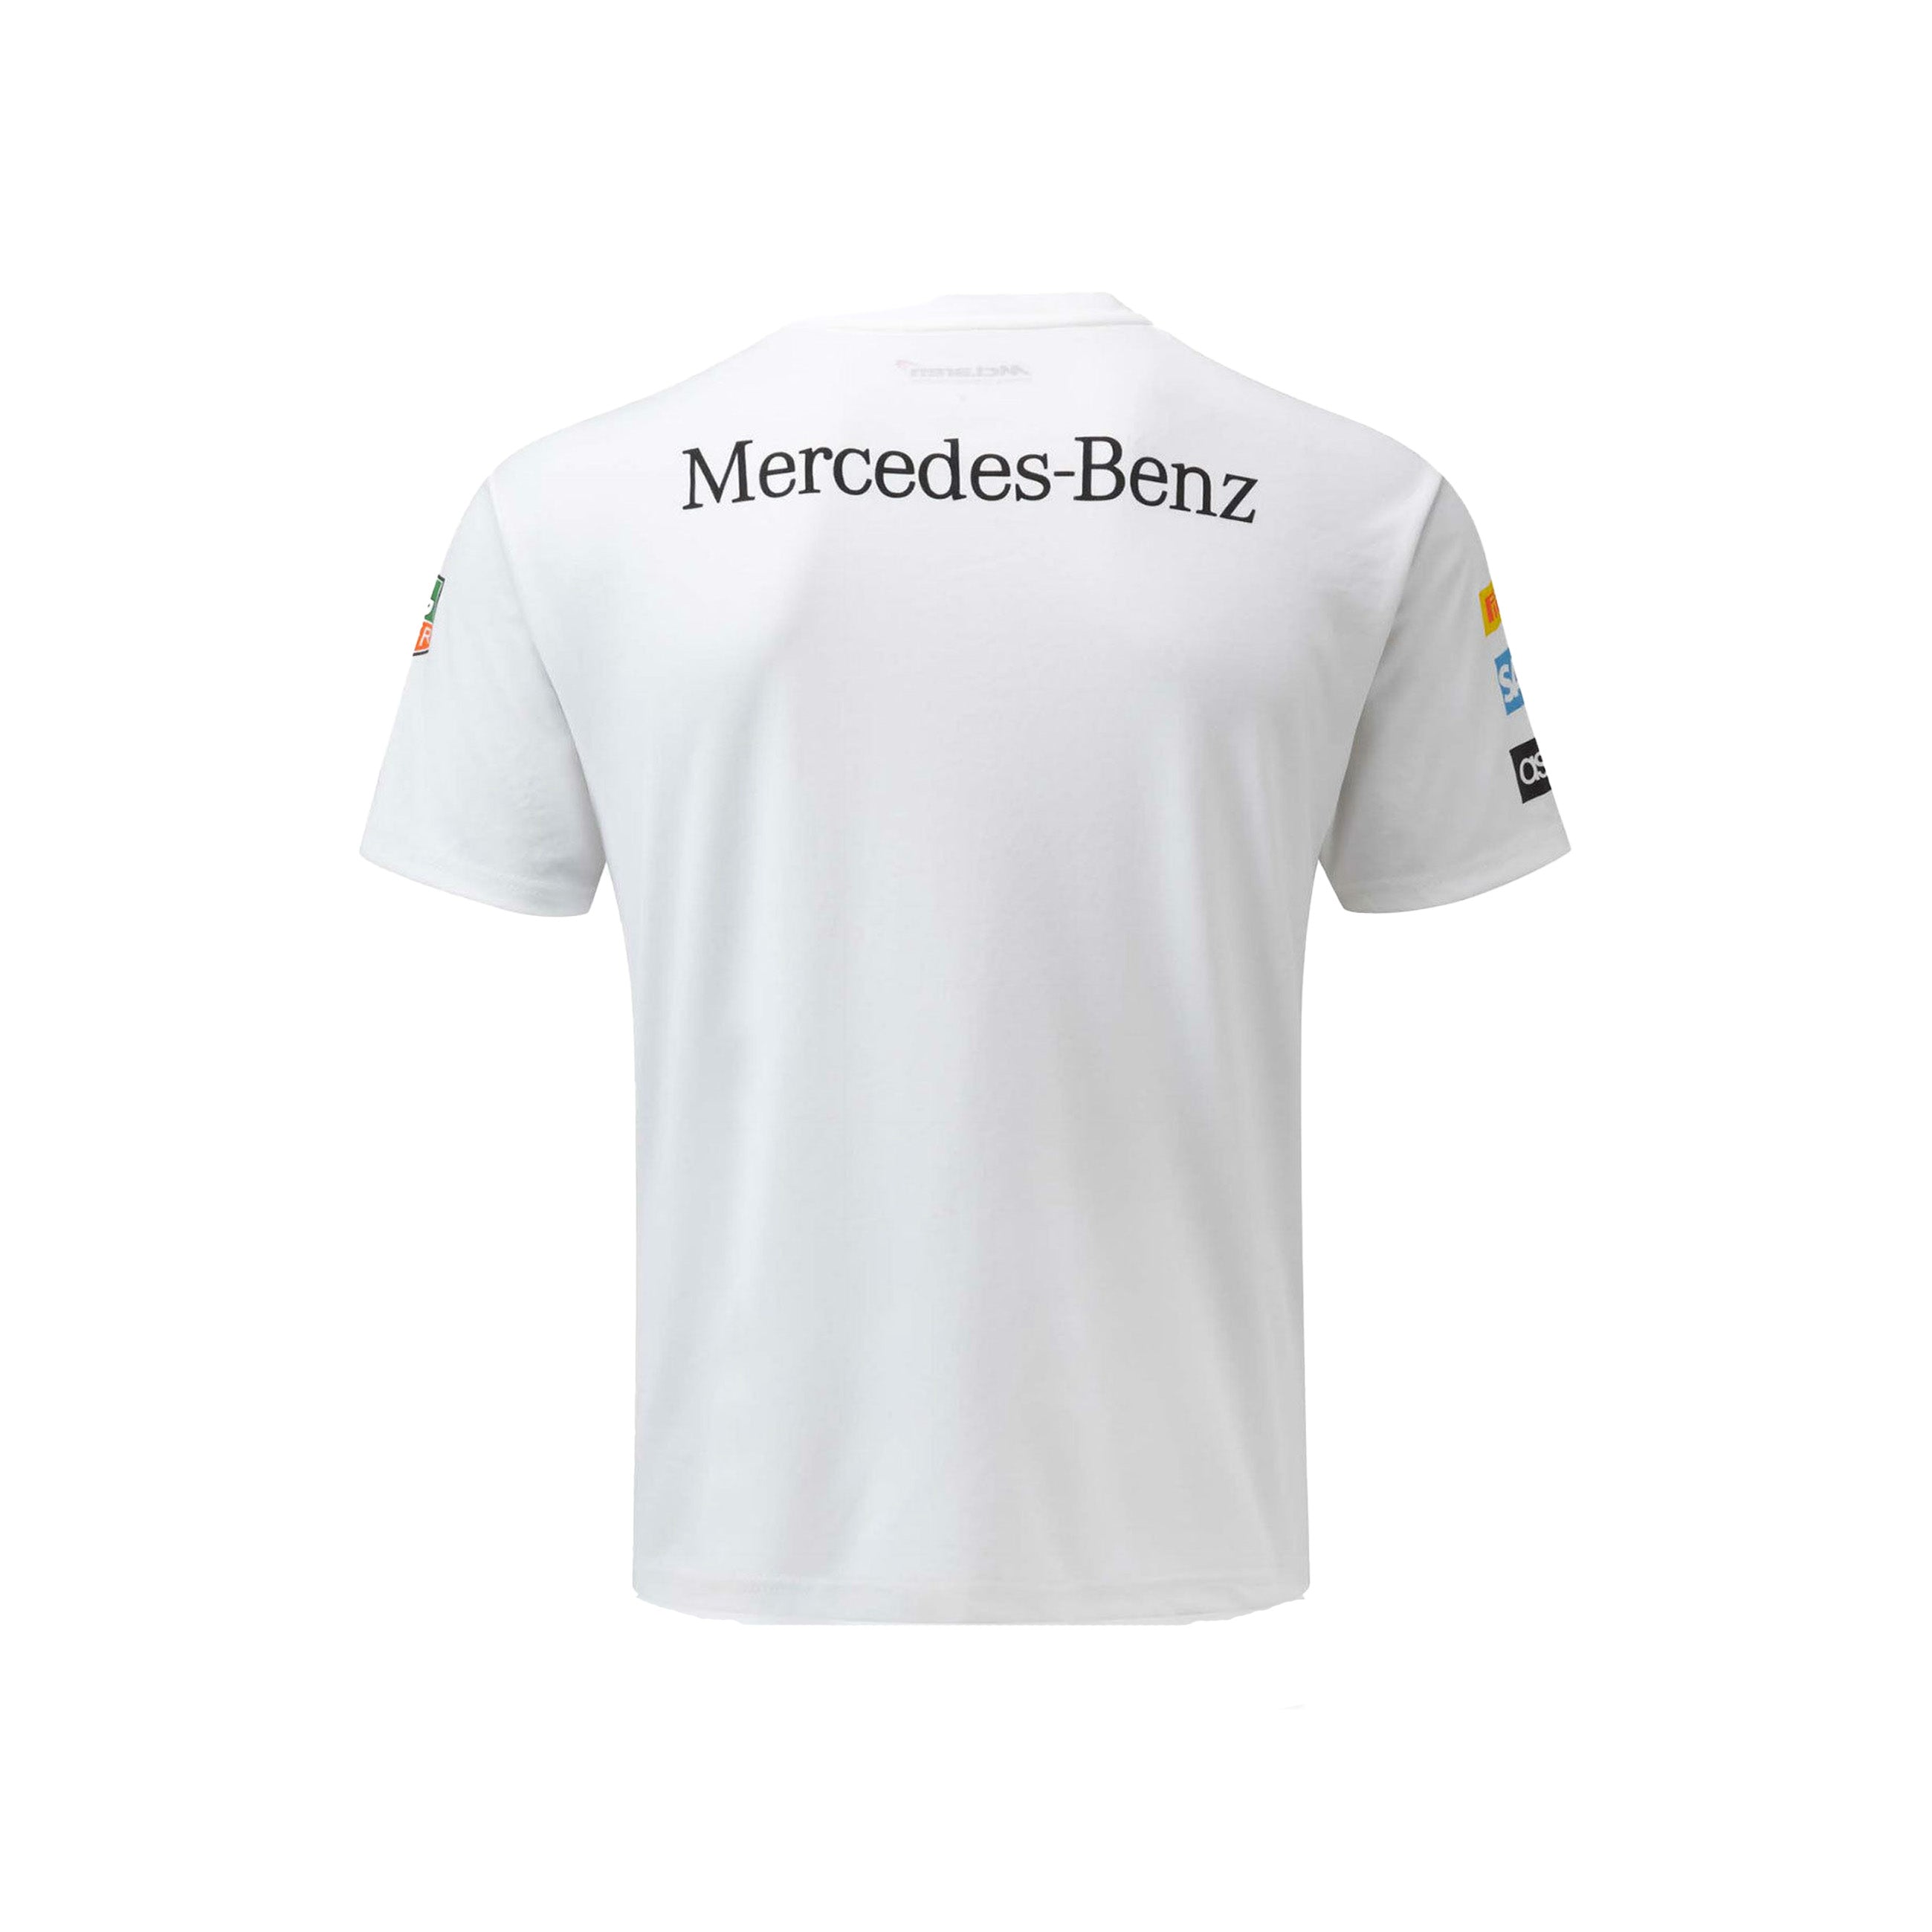 McLaren Mercedes Men's Team Sponsor T-Shirt White